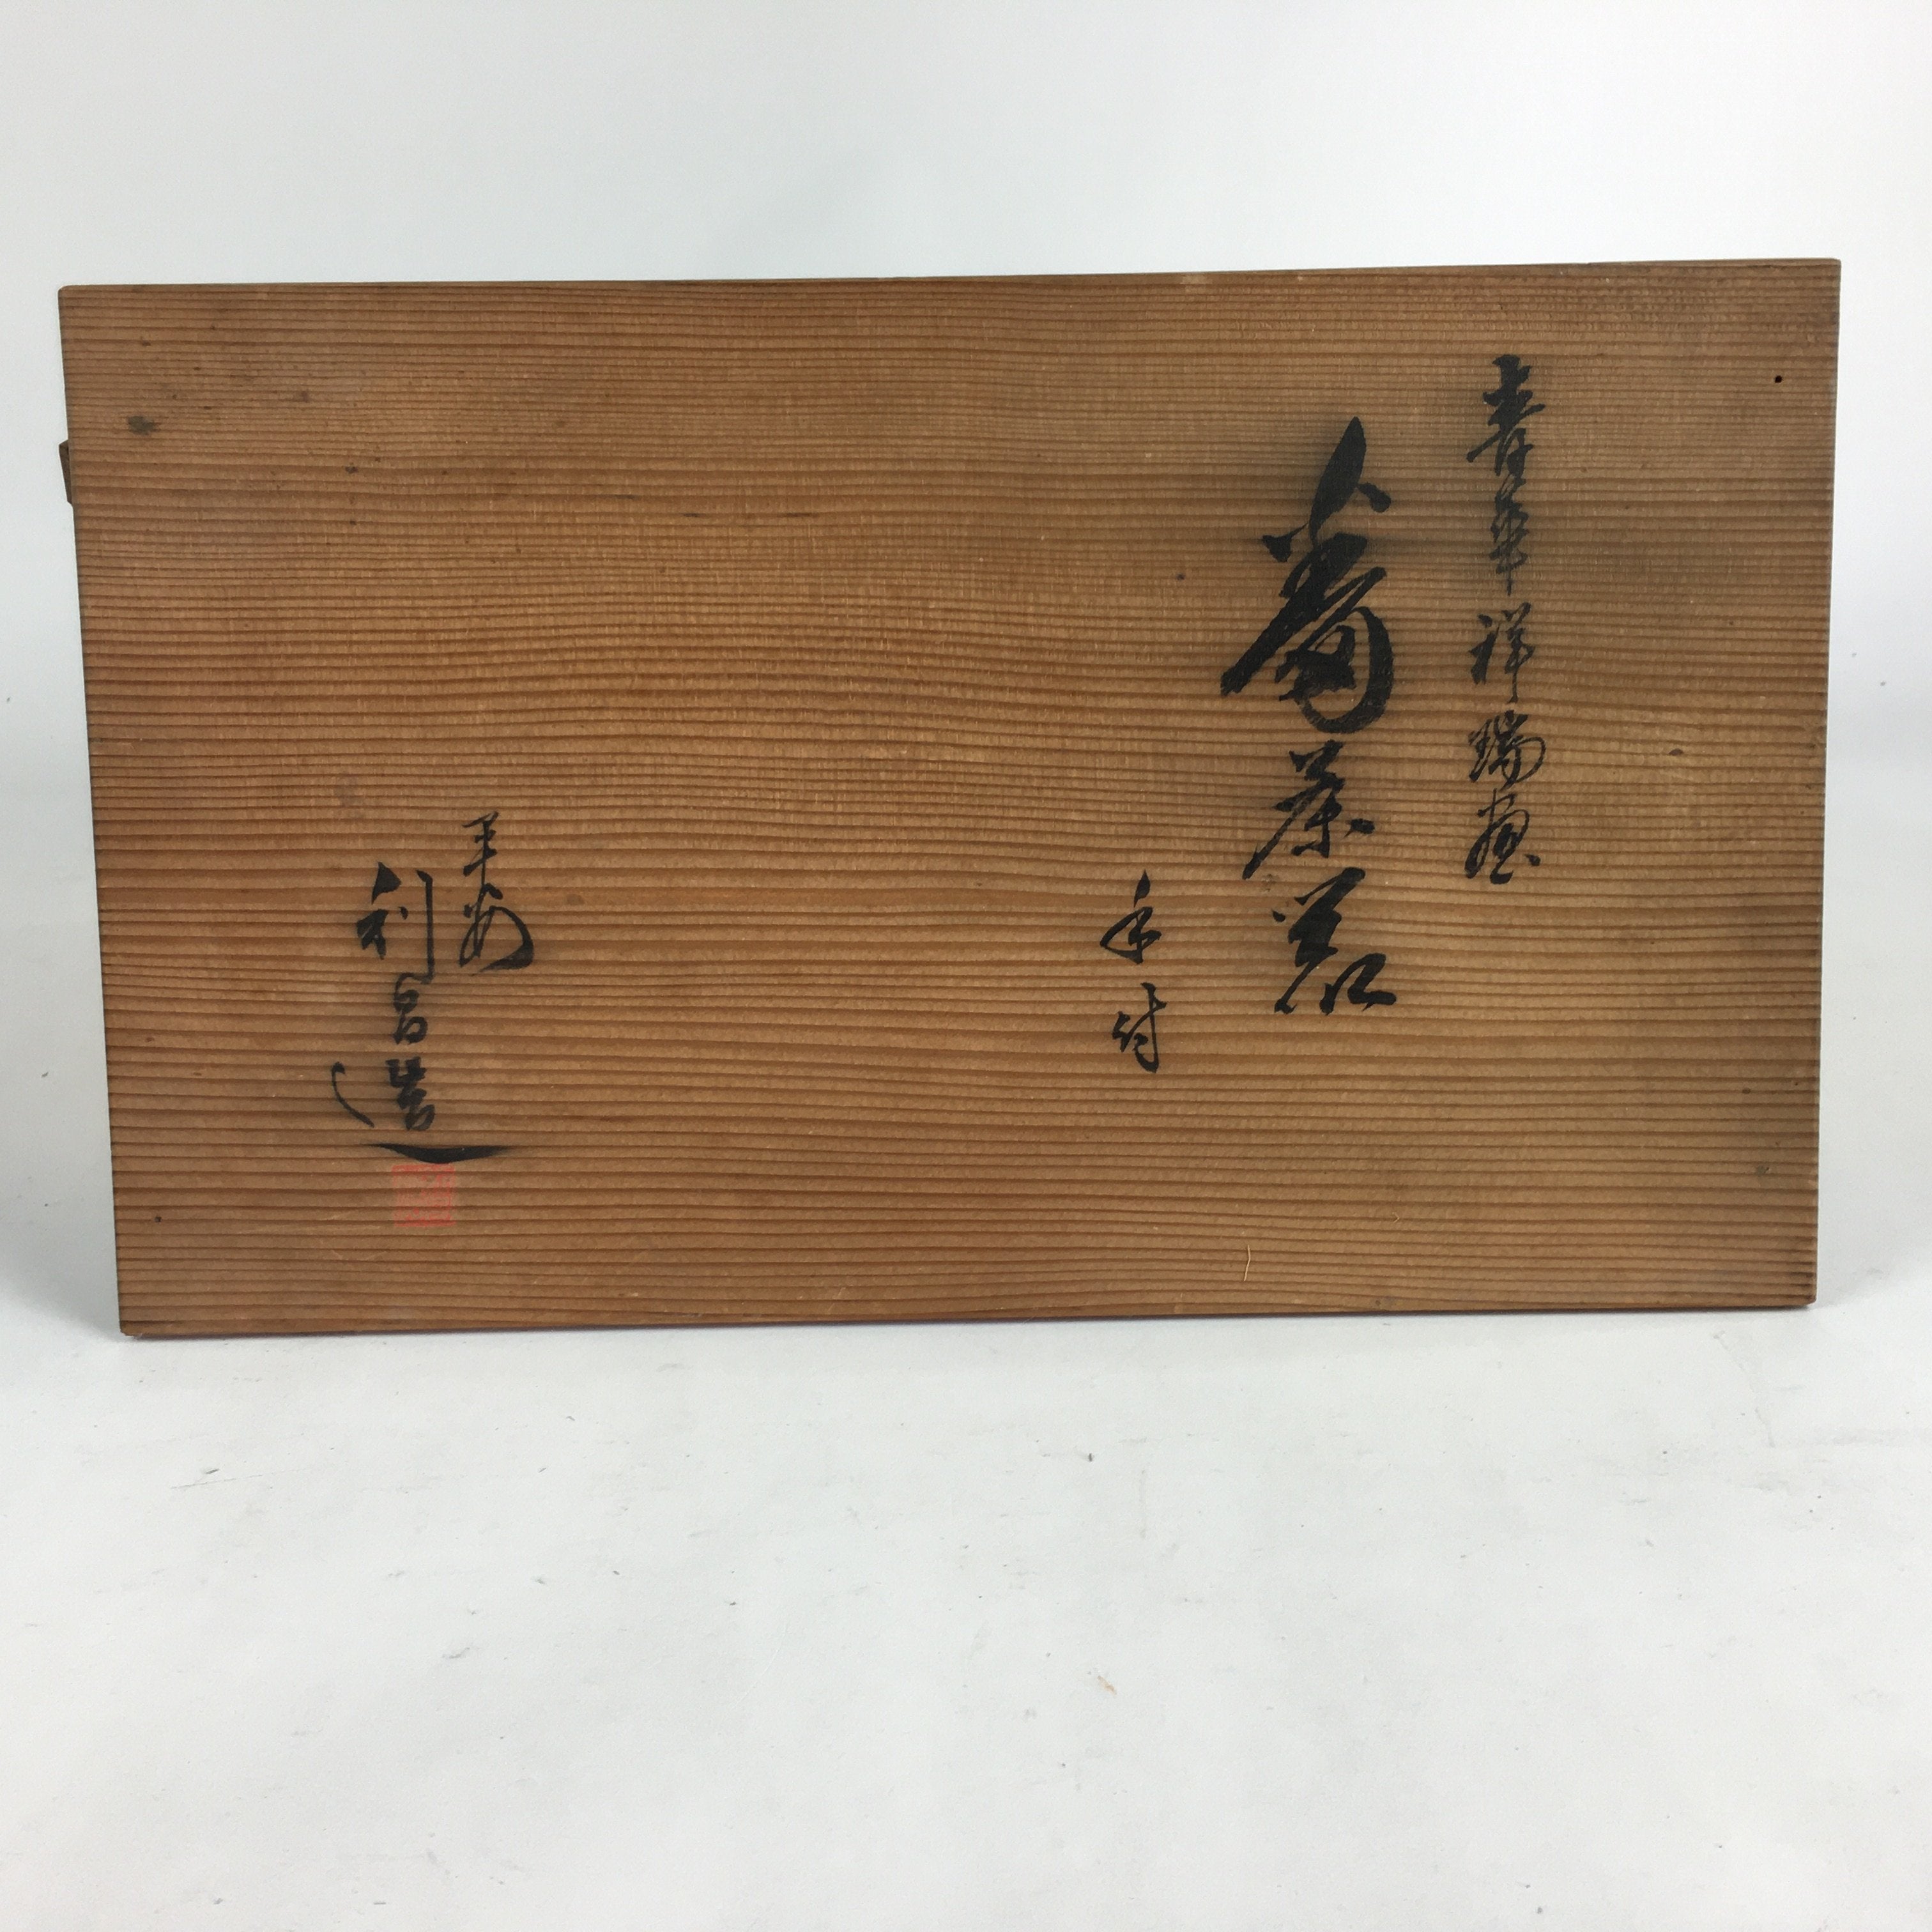 Japanese Wooden Storage Box Vtg Pottery Hako Inside 40.5x23.7x20.5cm WB869